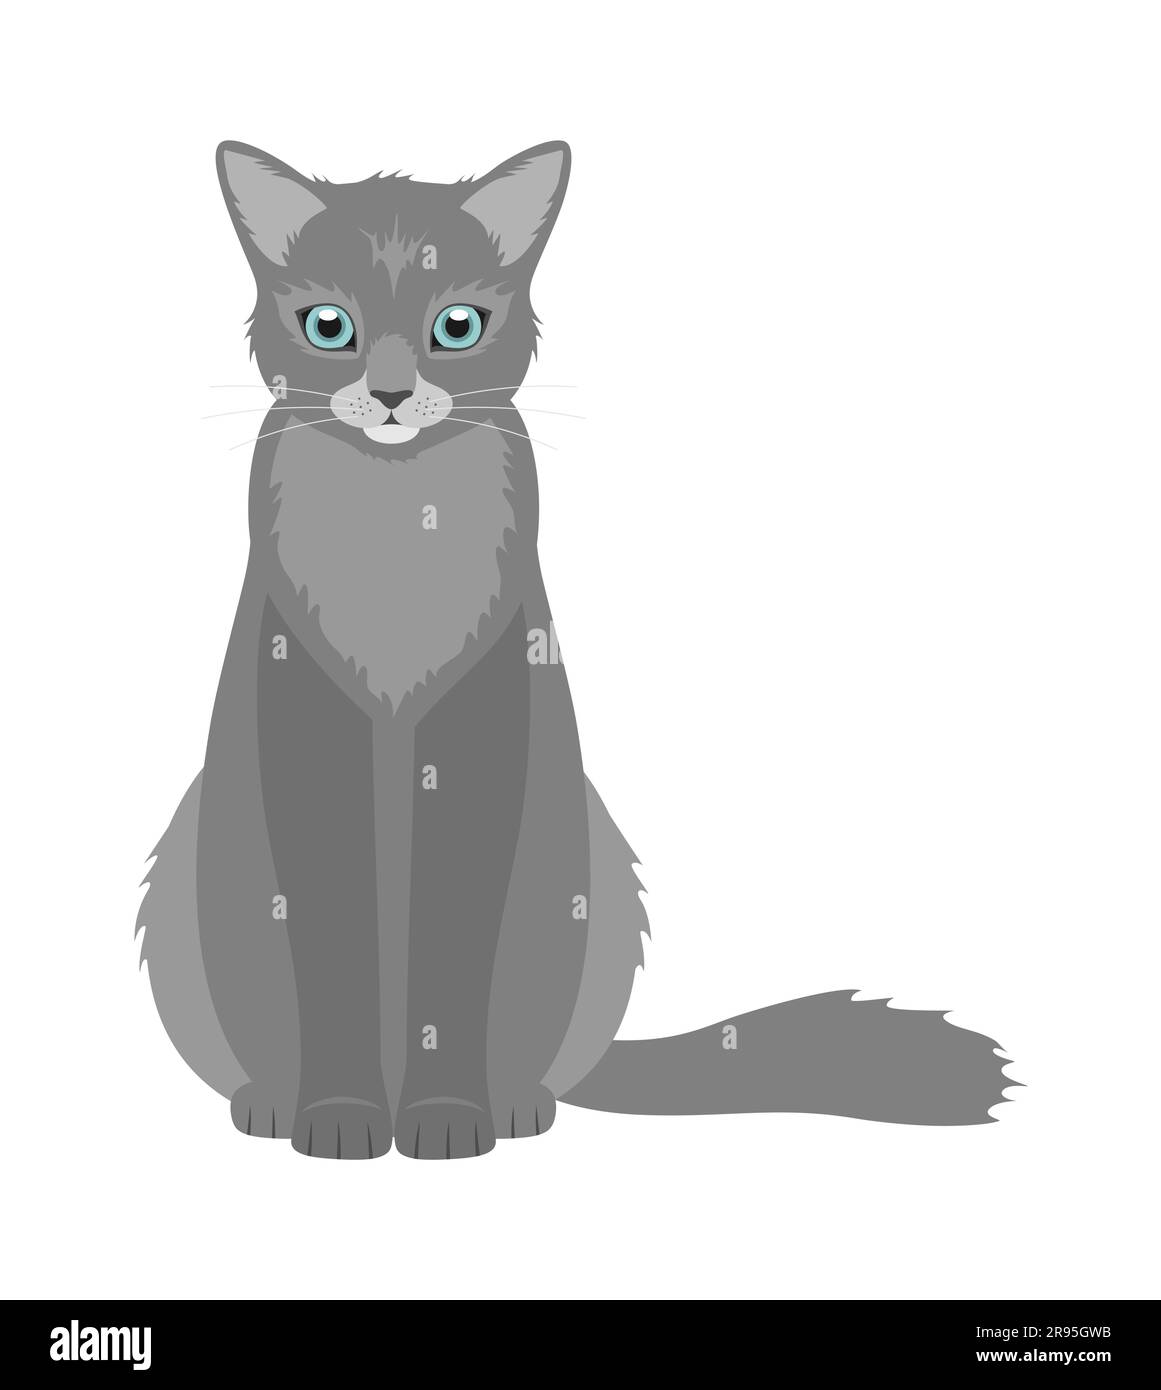 Un chat gris avec des yeux bleus assis isolés sur un fond blanc. Illustration vectorielle plate Illustration de Vecteur